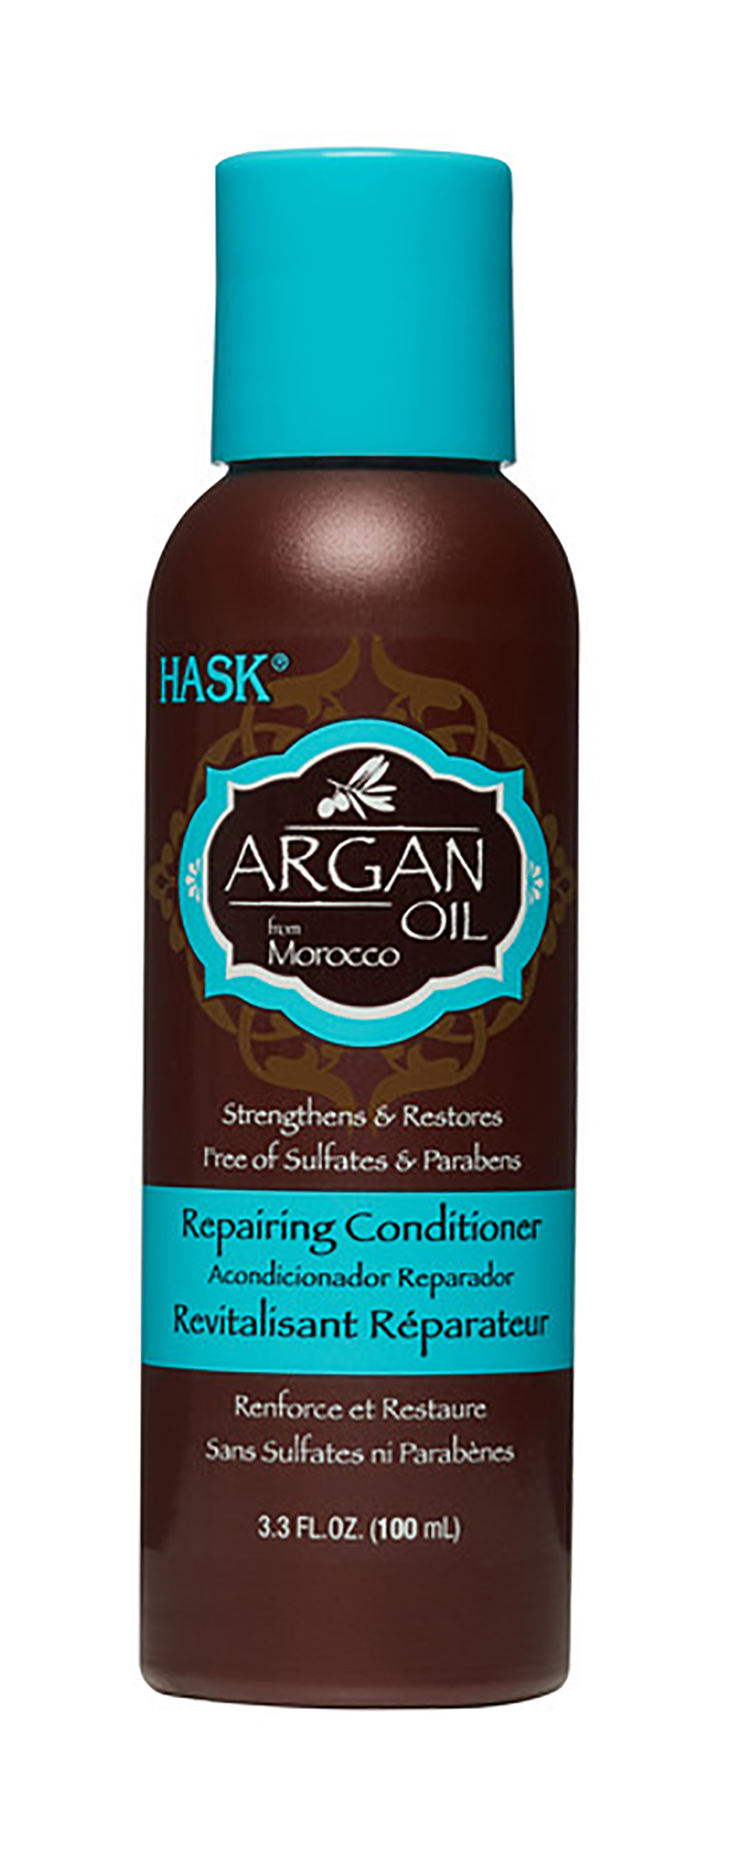 Кондиционер для волос Hask Argan Oil Repairing Conditioner Travel Size 100 мл hask кондиционер восстанавливающий для волос с аргановым маслом argan oil repairing conditioner 50 мл